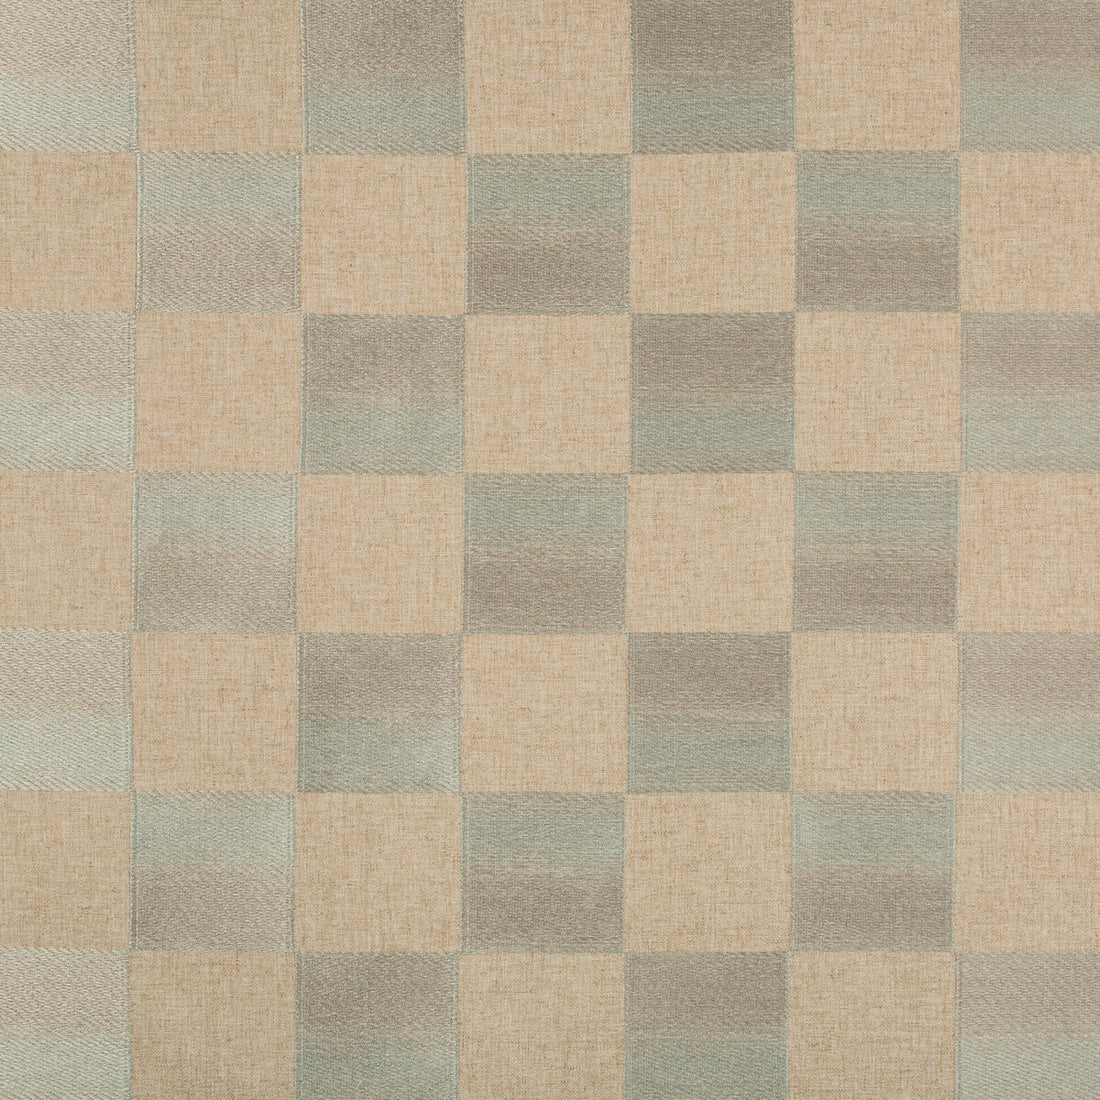 Kravet Basics fabric in 35803-316 color - pattern 35803.316.0 - by Kravet Basics